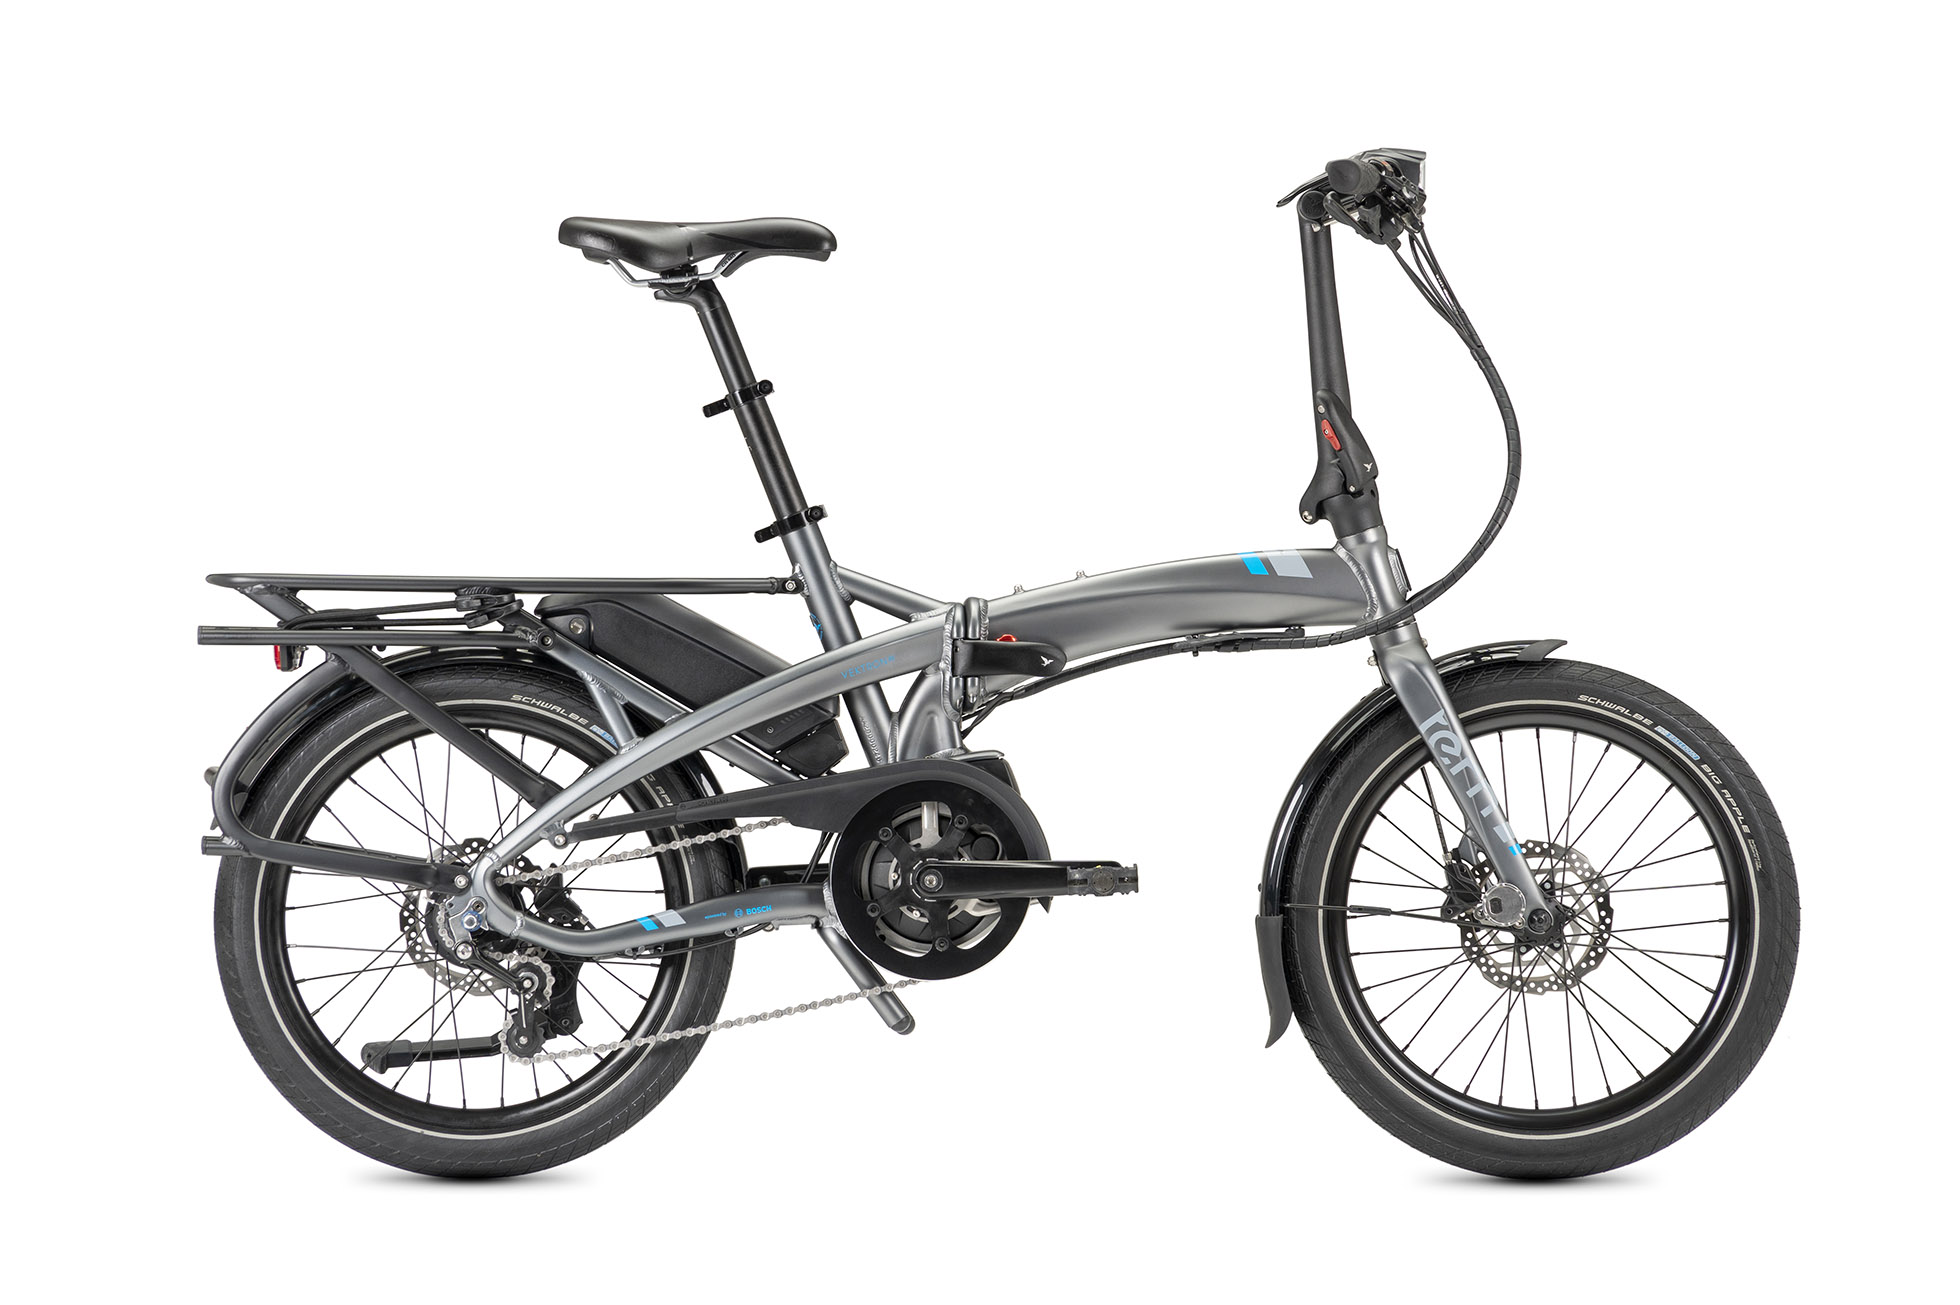 Vektron P7i: Folding E-Bike for Urban Commuters